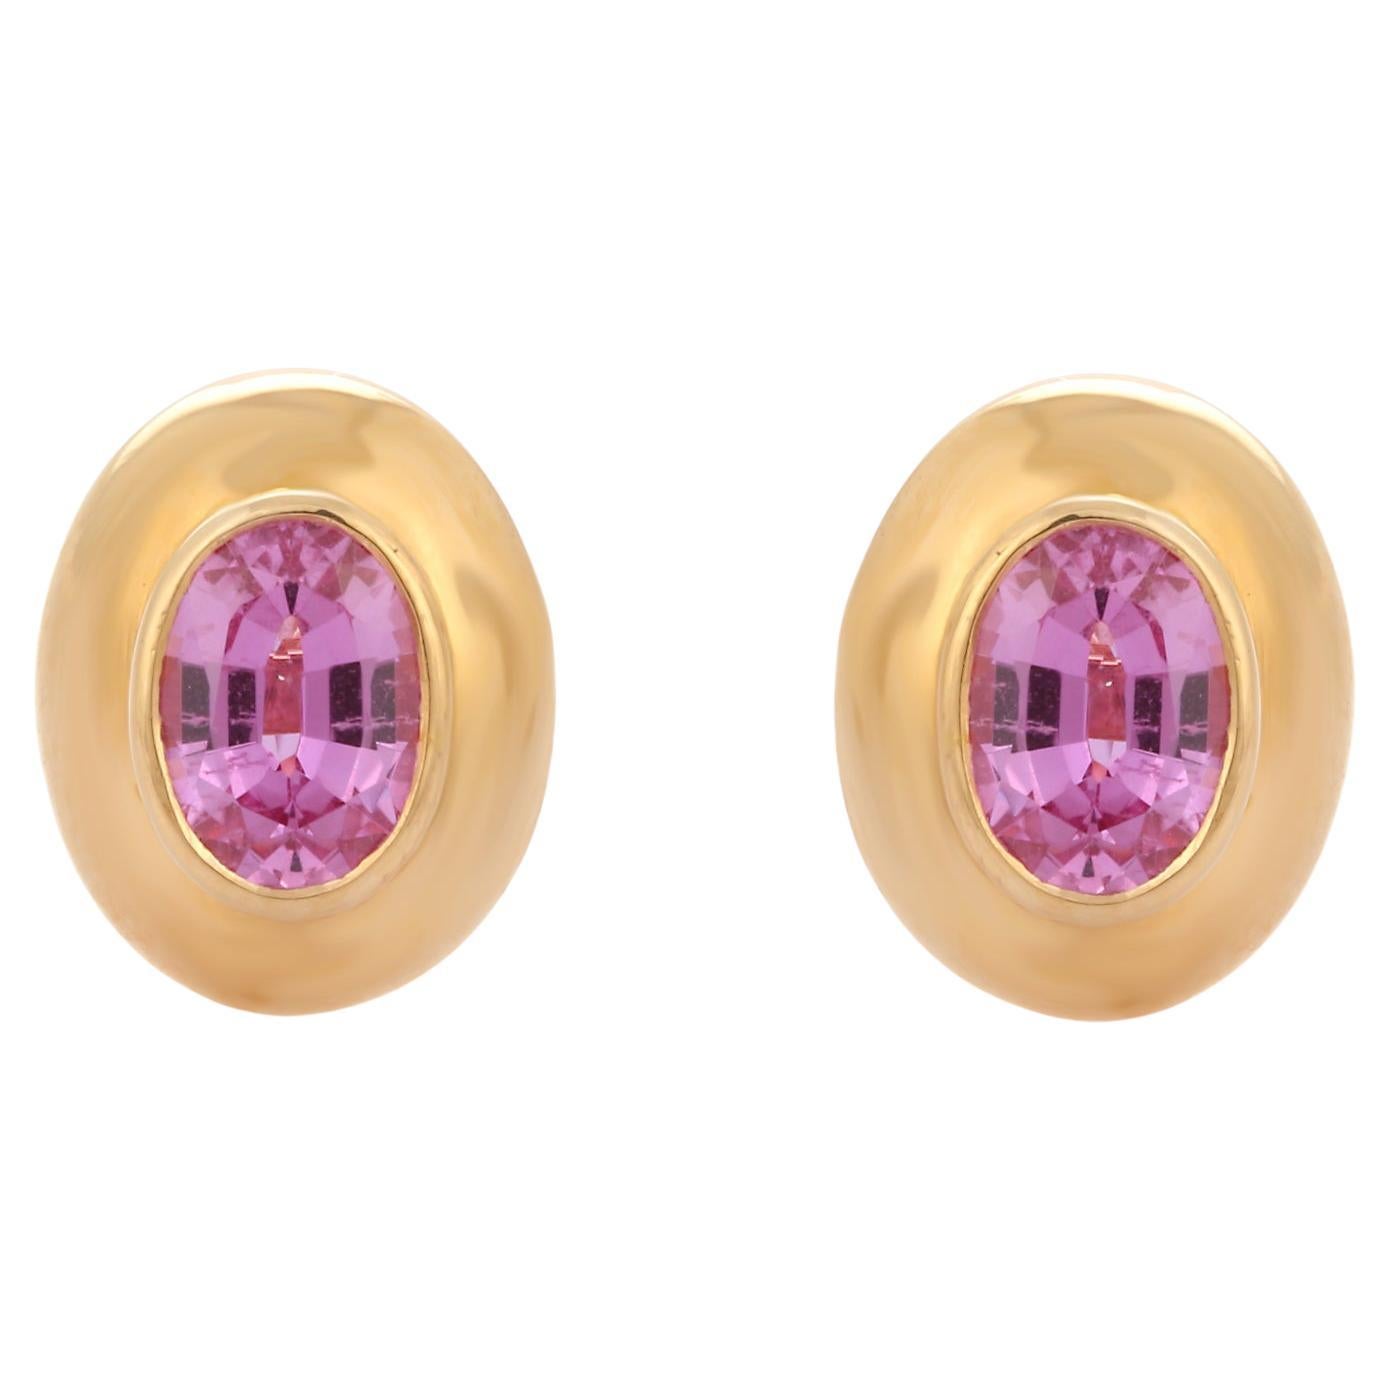 1.98 Carat Oval Cut Pink Sapphire Stud Earrings in 18K Yellow Gold